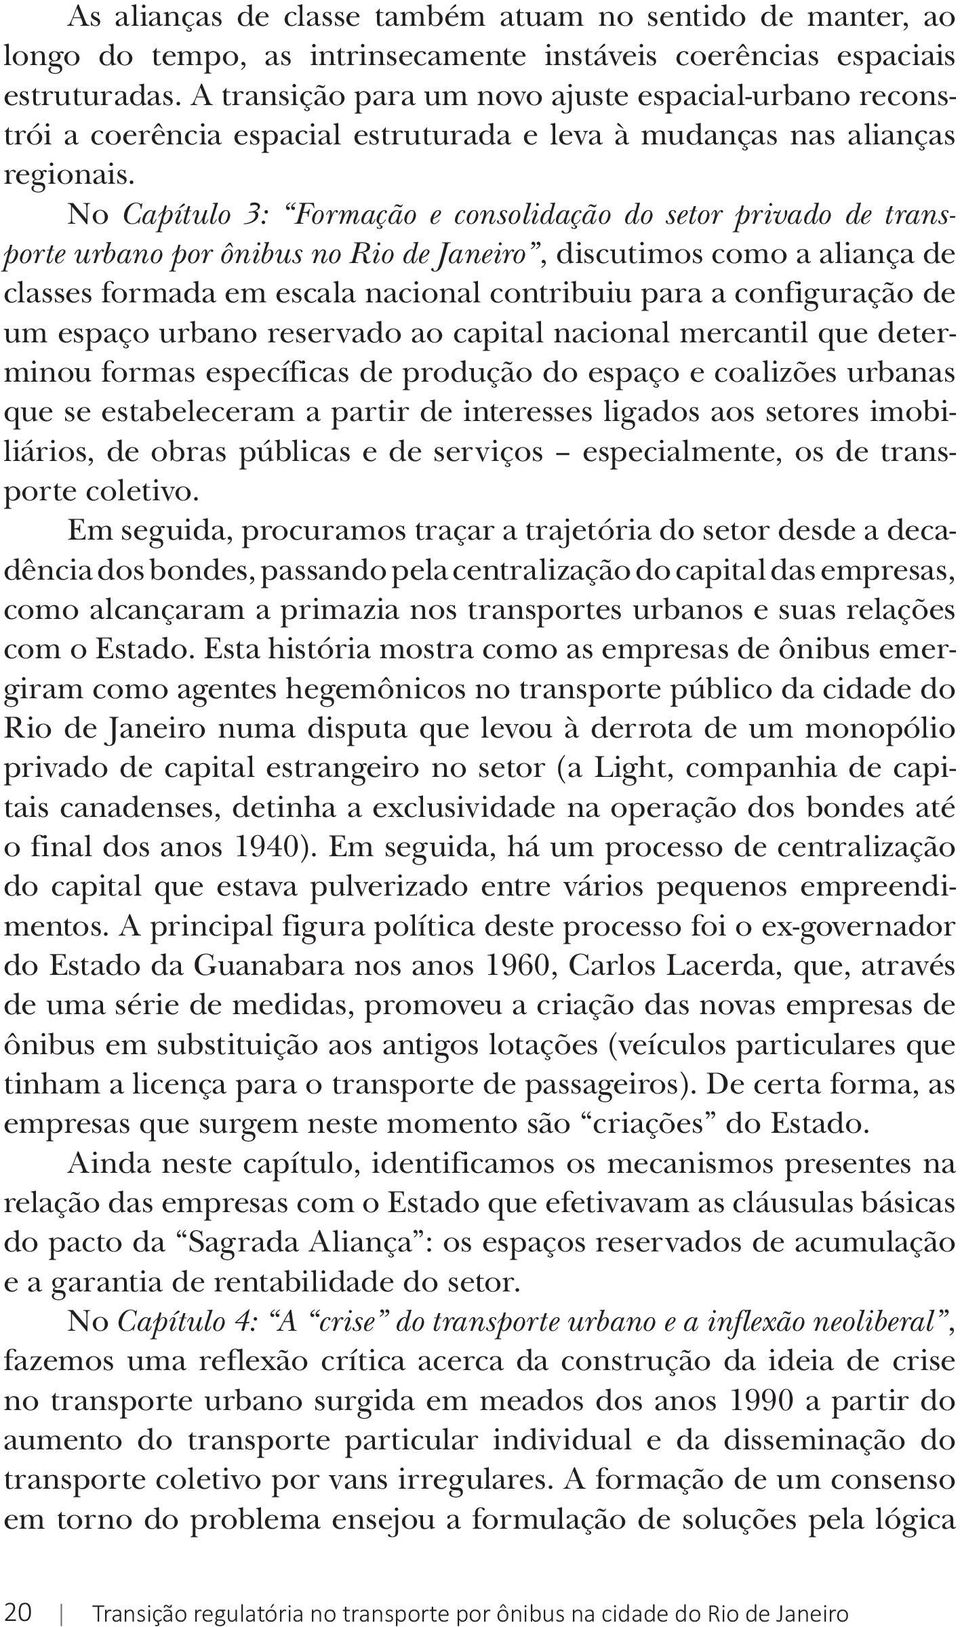 No Capítulo 3: Formação e consolidação do setor privado de transporte urbano por ônibus no Rio de Janeiro, discutimos como a aliança de classes formada em escala nacional contribuiu para a